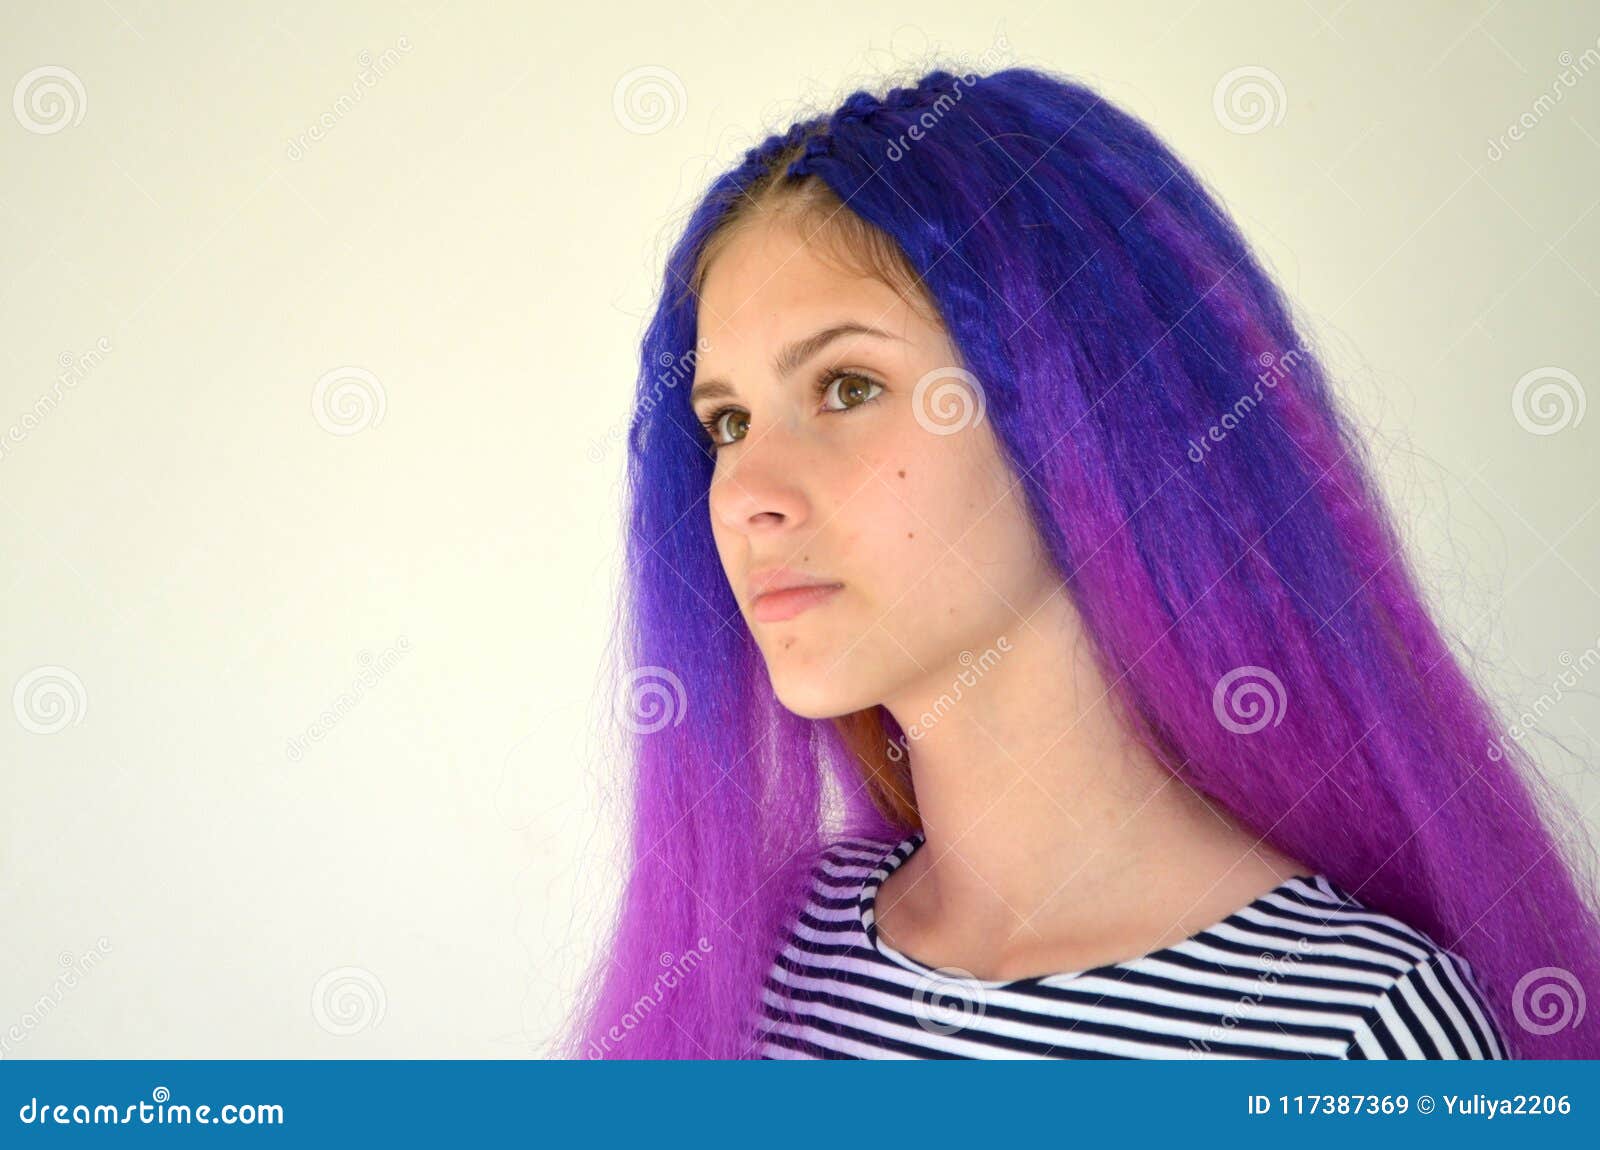 womens blue purple hair